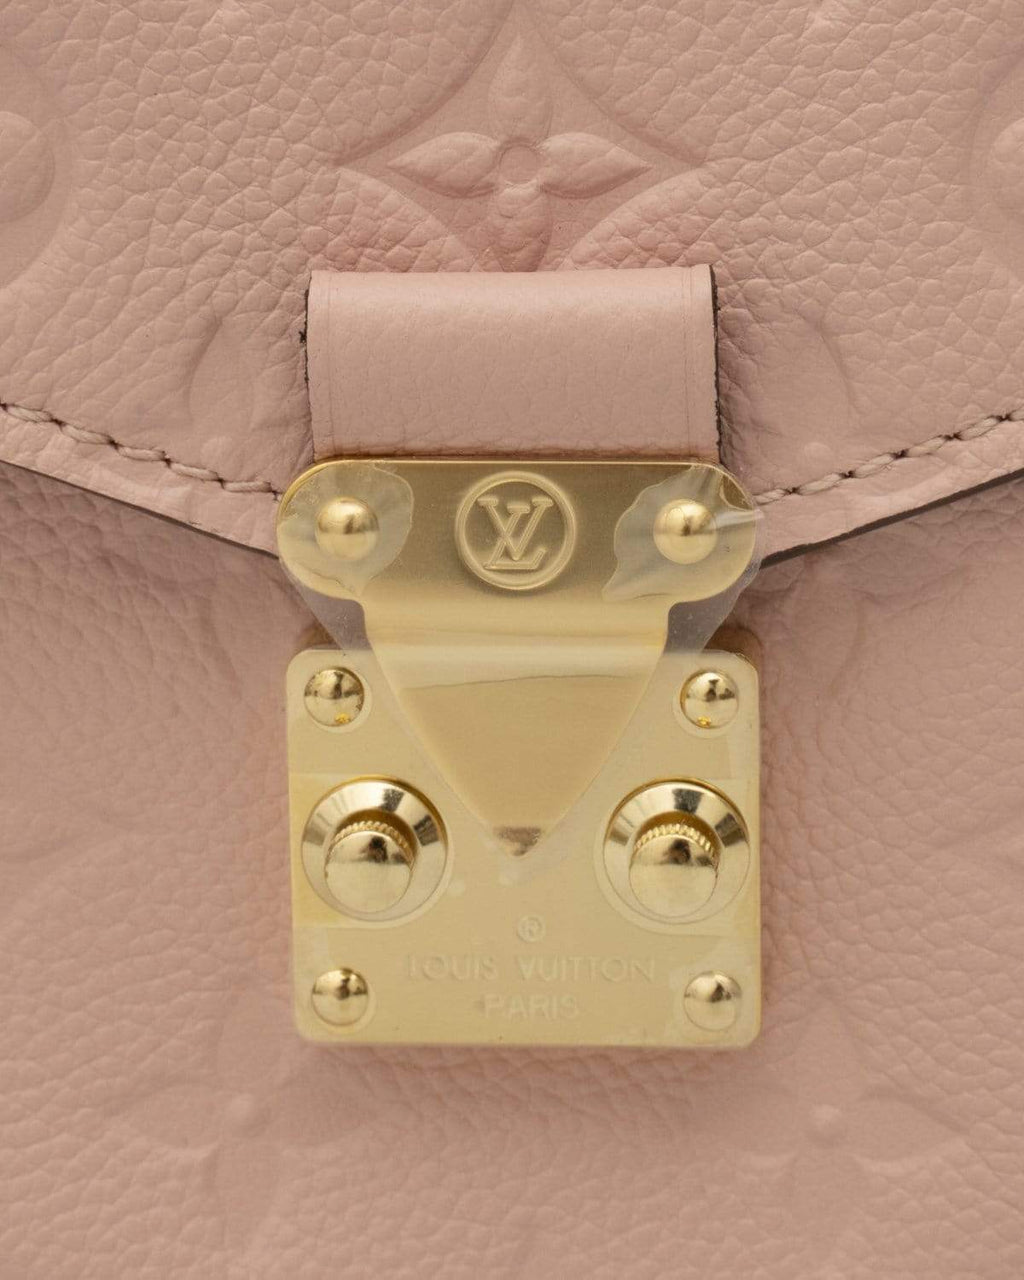 Louis Vuitton pochette Metis limited edition – A Piece Lux